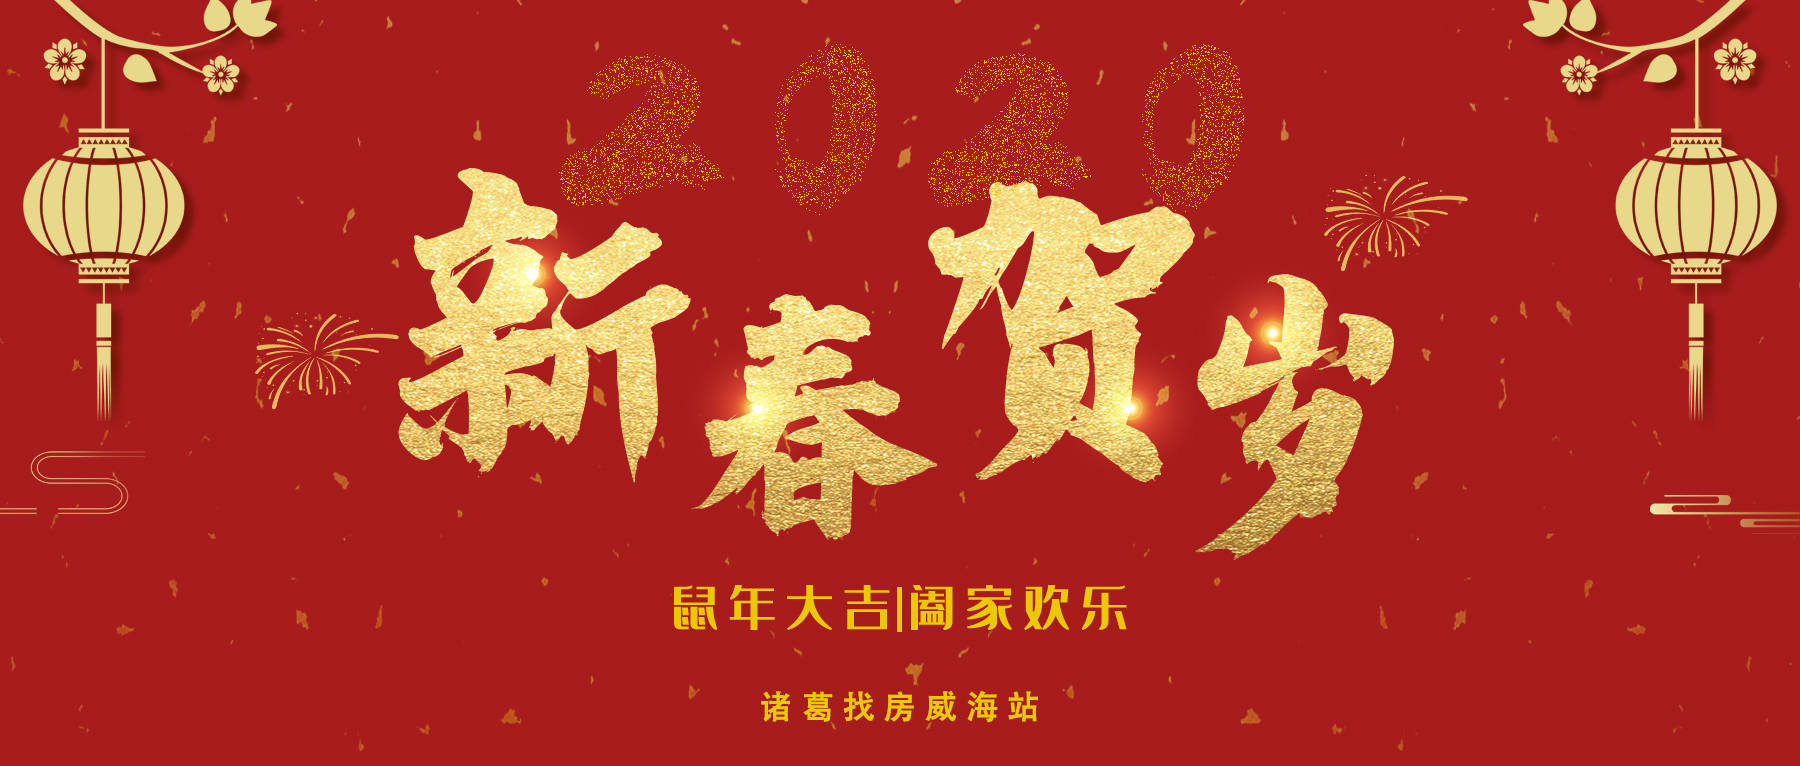 喜庆中国年新春贺岁公众号封面